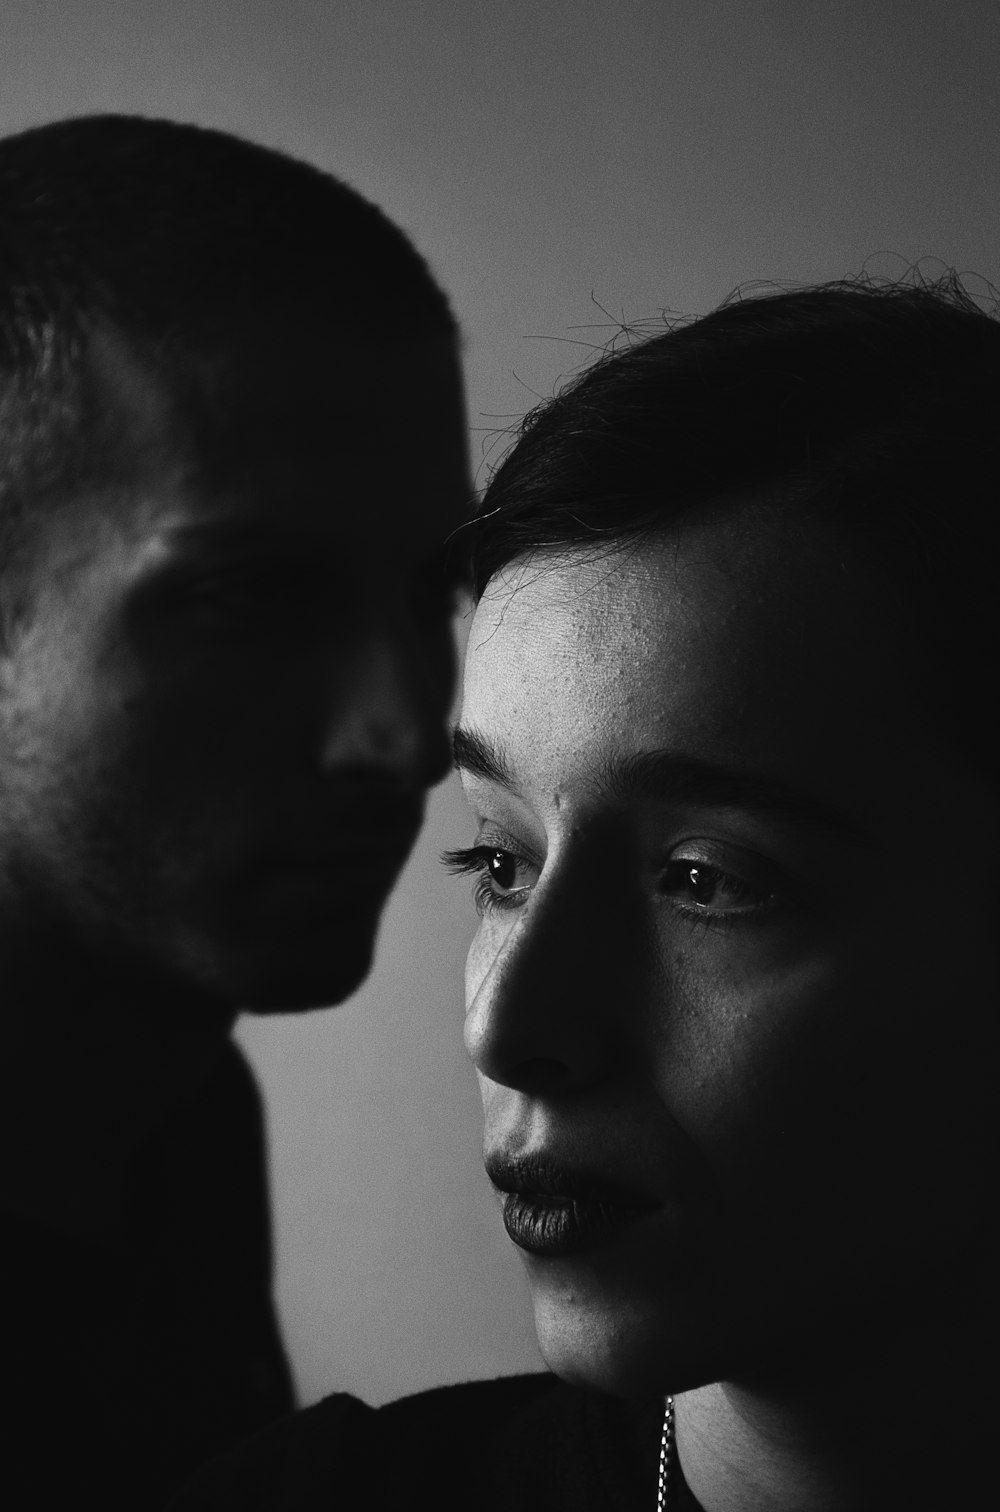 Mann und Frau in der Graustufenfotografie